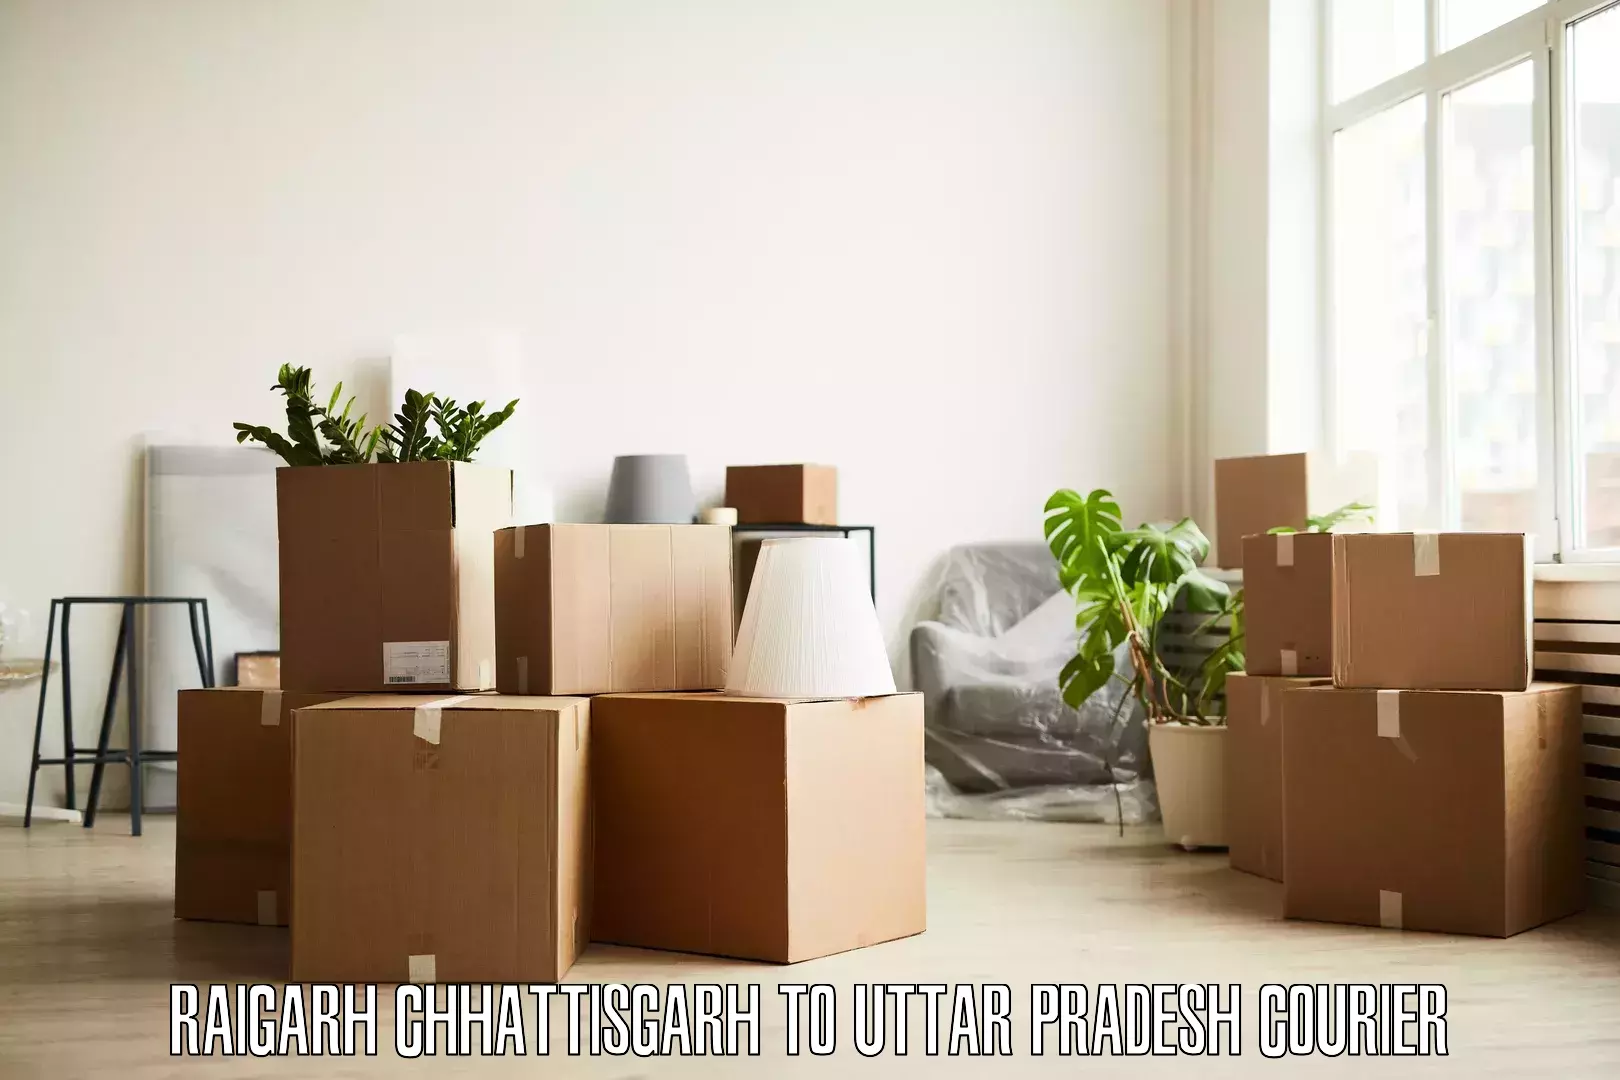 Professional movers and packers Raigarh Chhattisgarh to Miyanganj